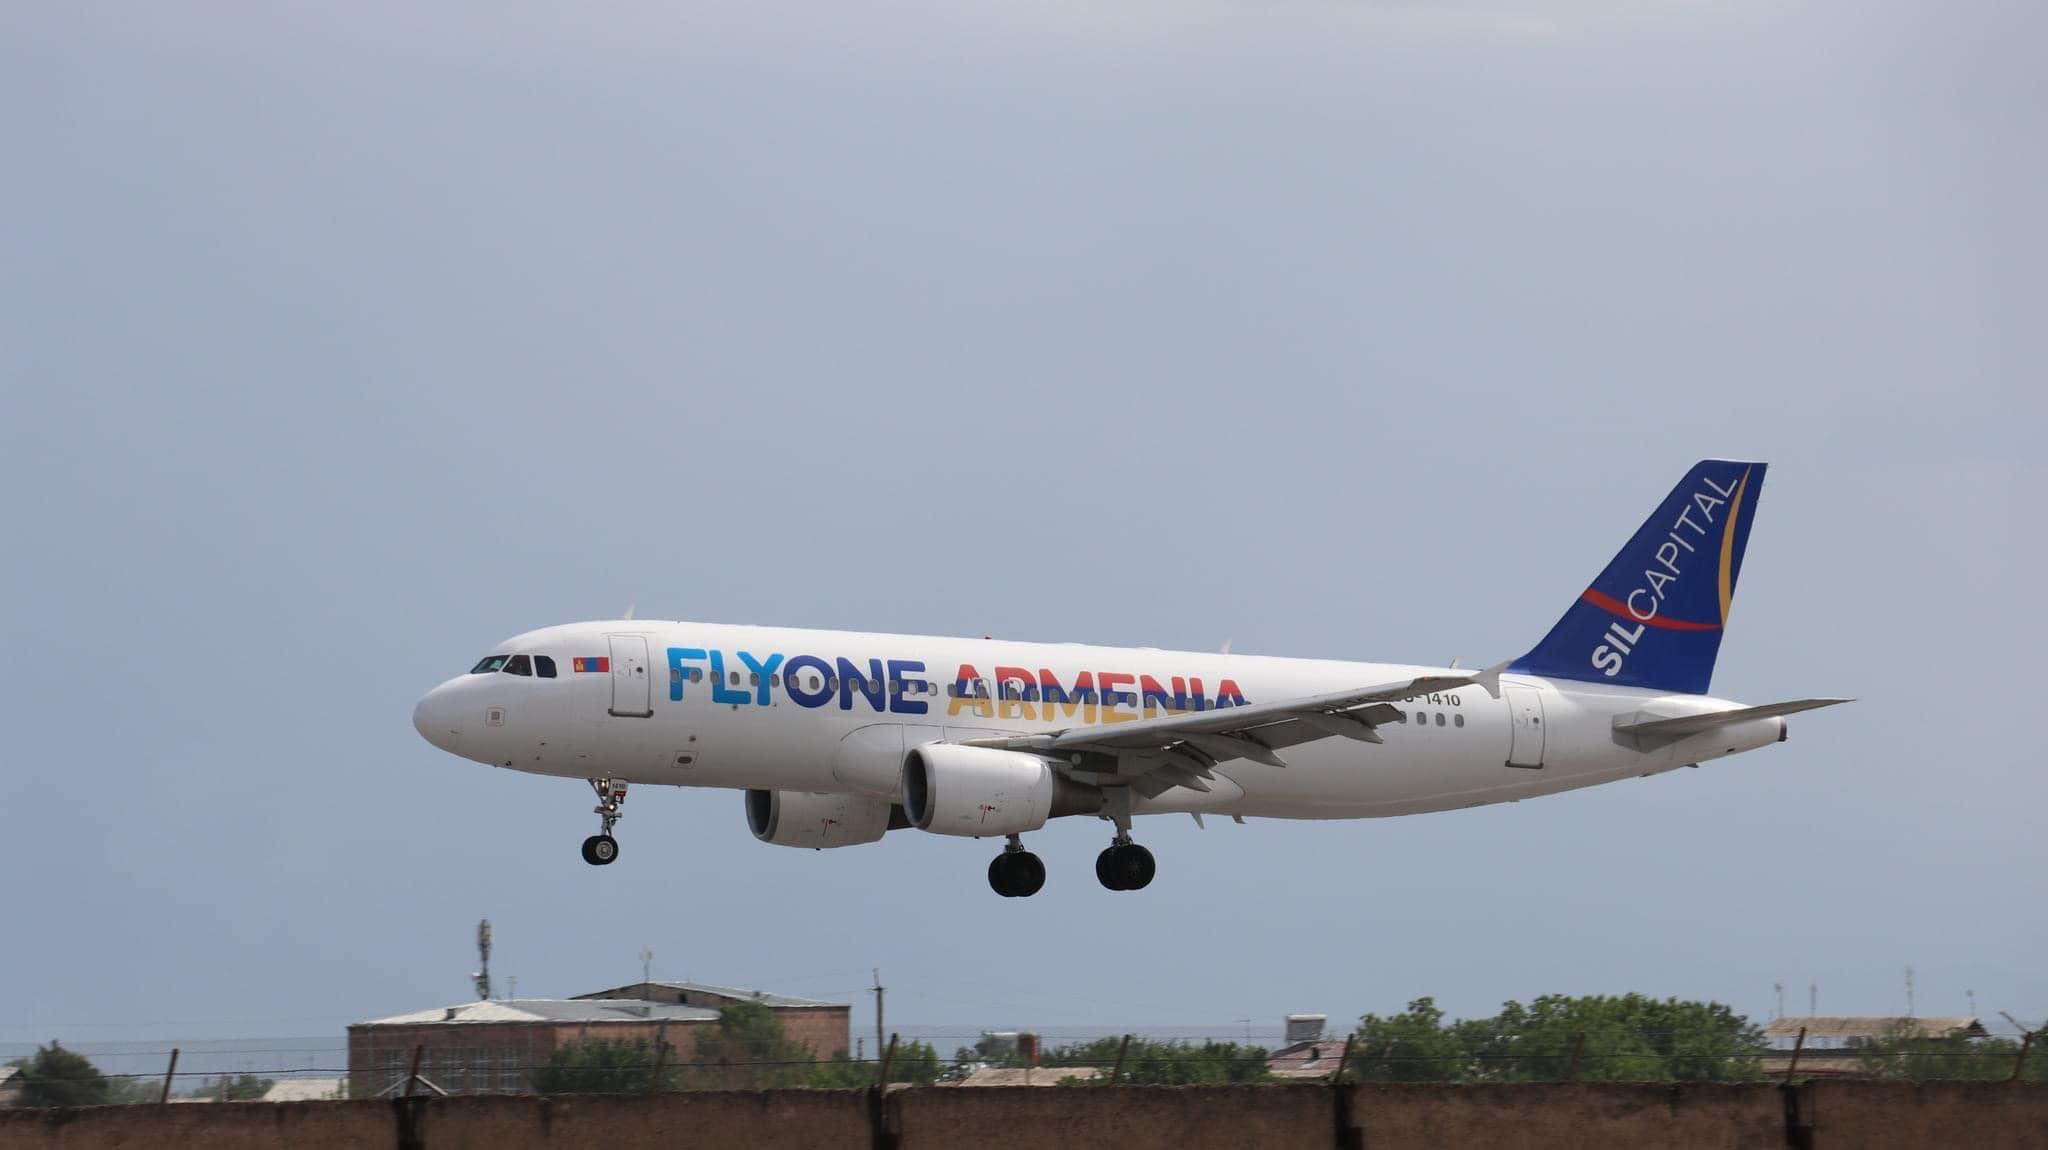 Վարձակալած օդանավերից մեկի հետ տեղի ունեցած միջադեպը որոշակի բացասական ազդեցություն է ունեցել չվացուցակի վրա. FLY ONE ARMENIA